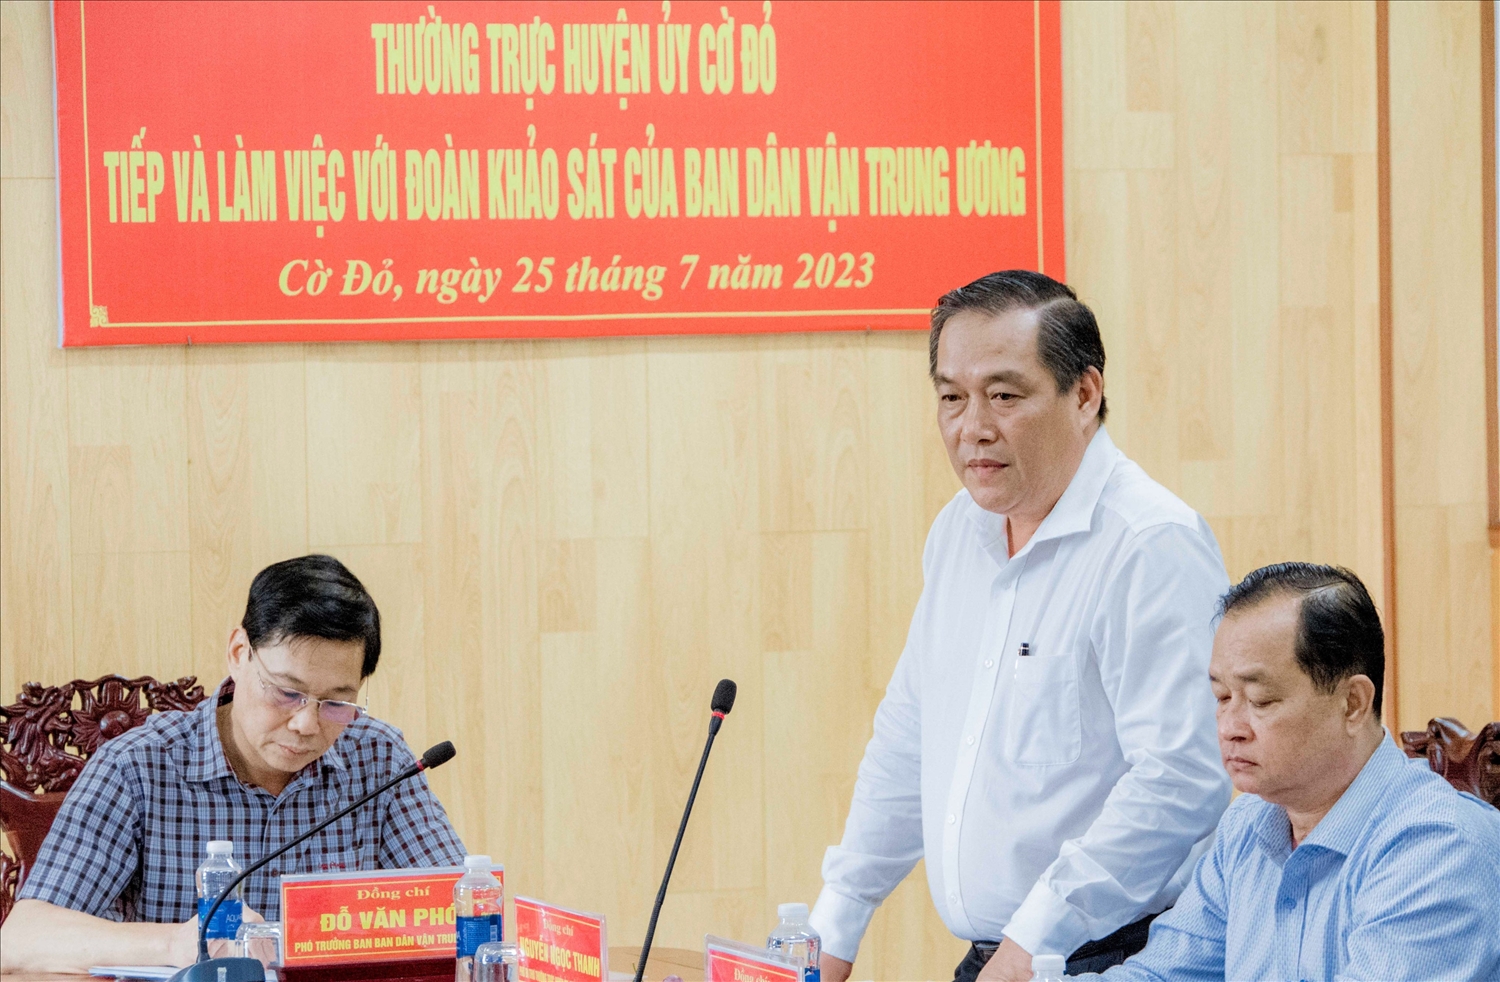 Ông Nguyễn Ngọc Thanh – Phó Bí thư Thường trực Huyện ủy, Chủ tịch HĐND huyện Cờ Đỏ tham gia đóng góp bổ sung báo cáo 